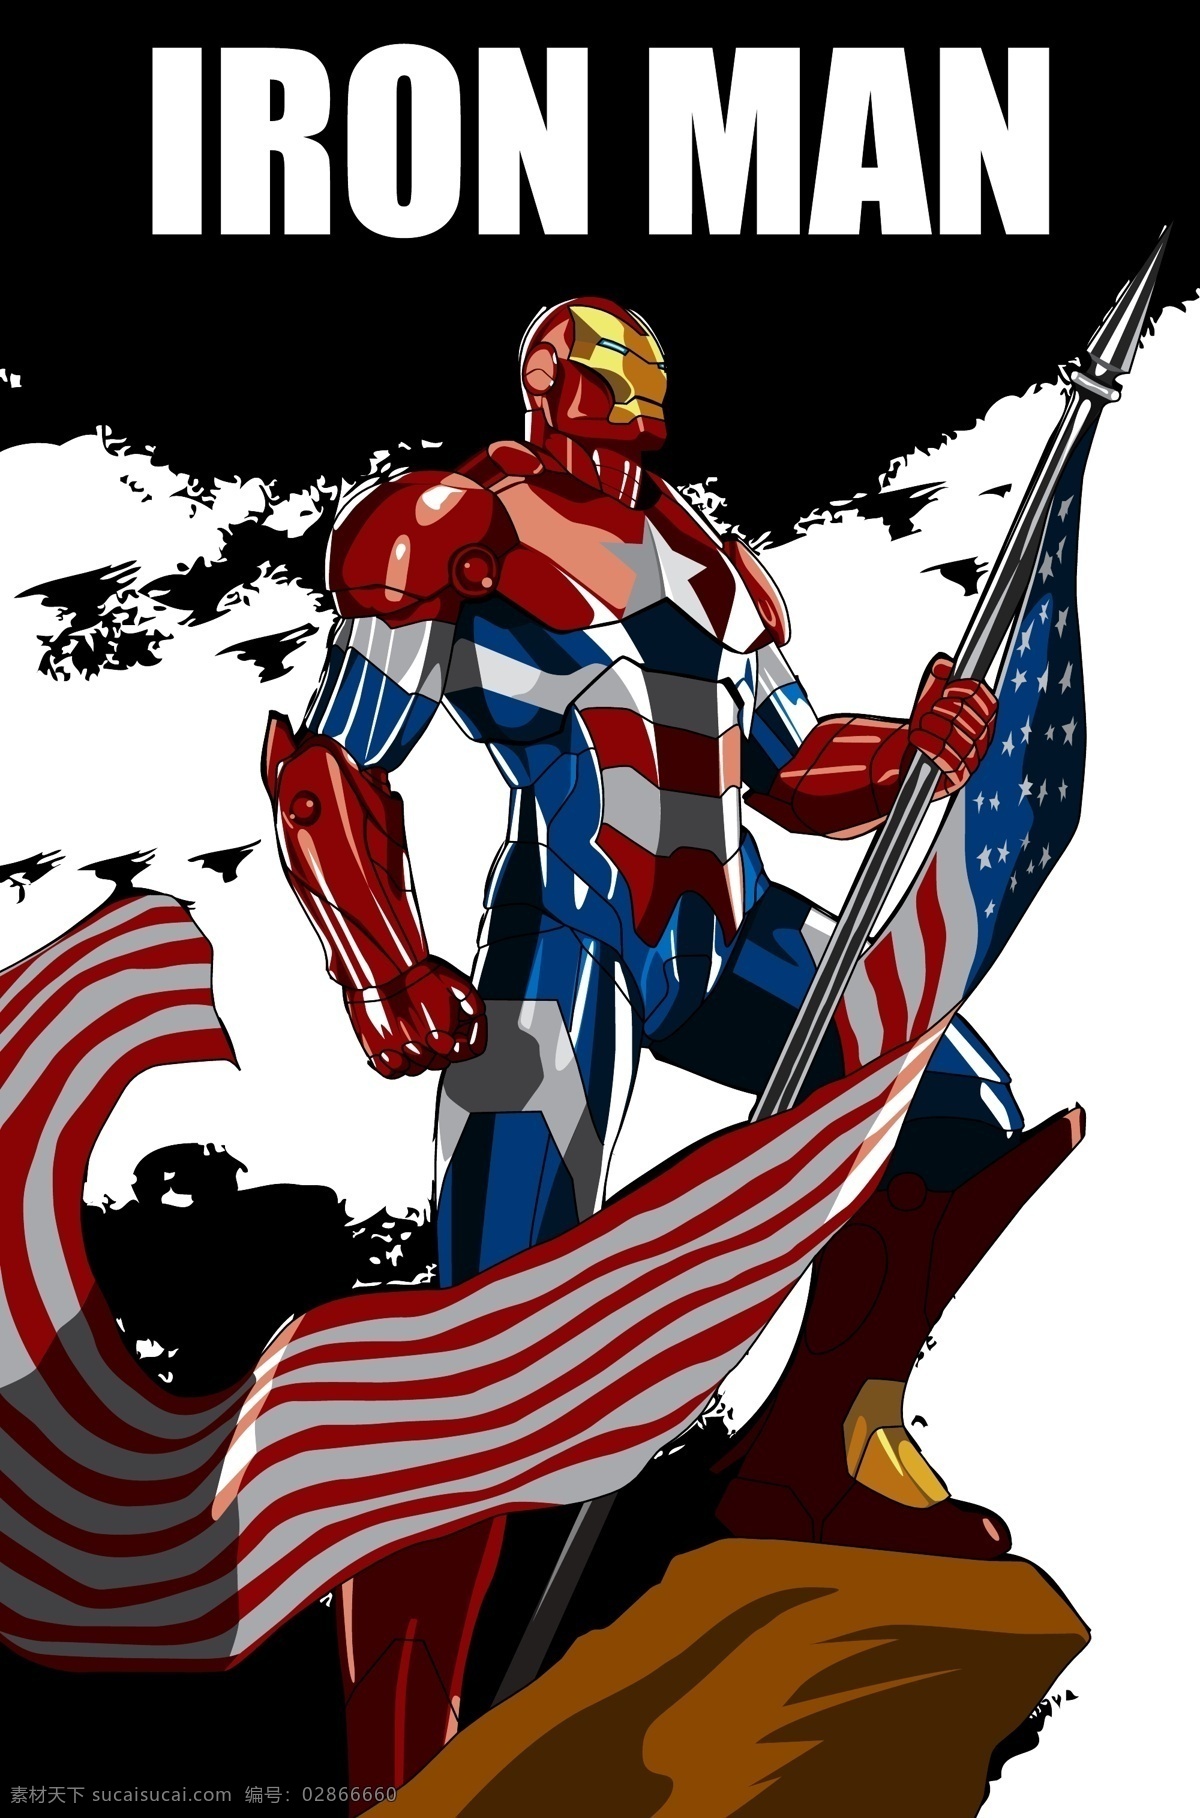 钢铁侠 漫威 超级英雄 美国国旗 复仇者联盟 卡通设计 矢量素材 小素材